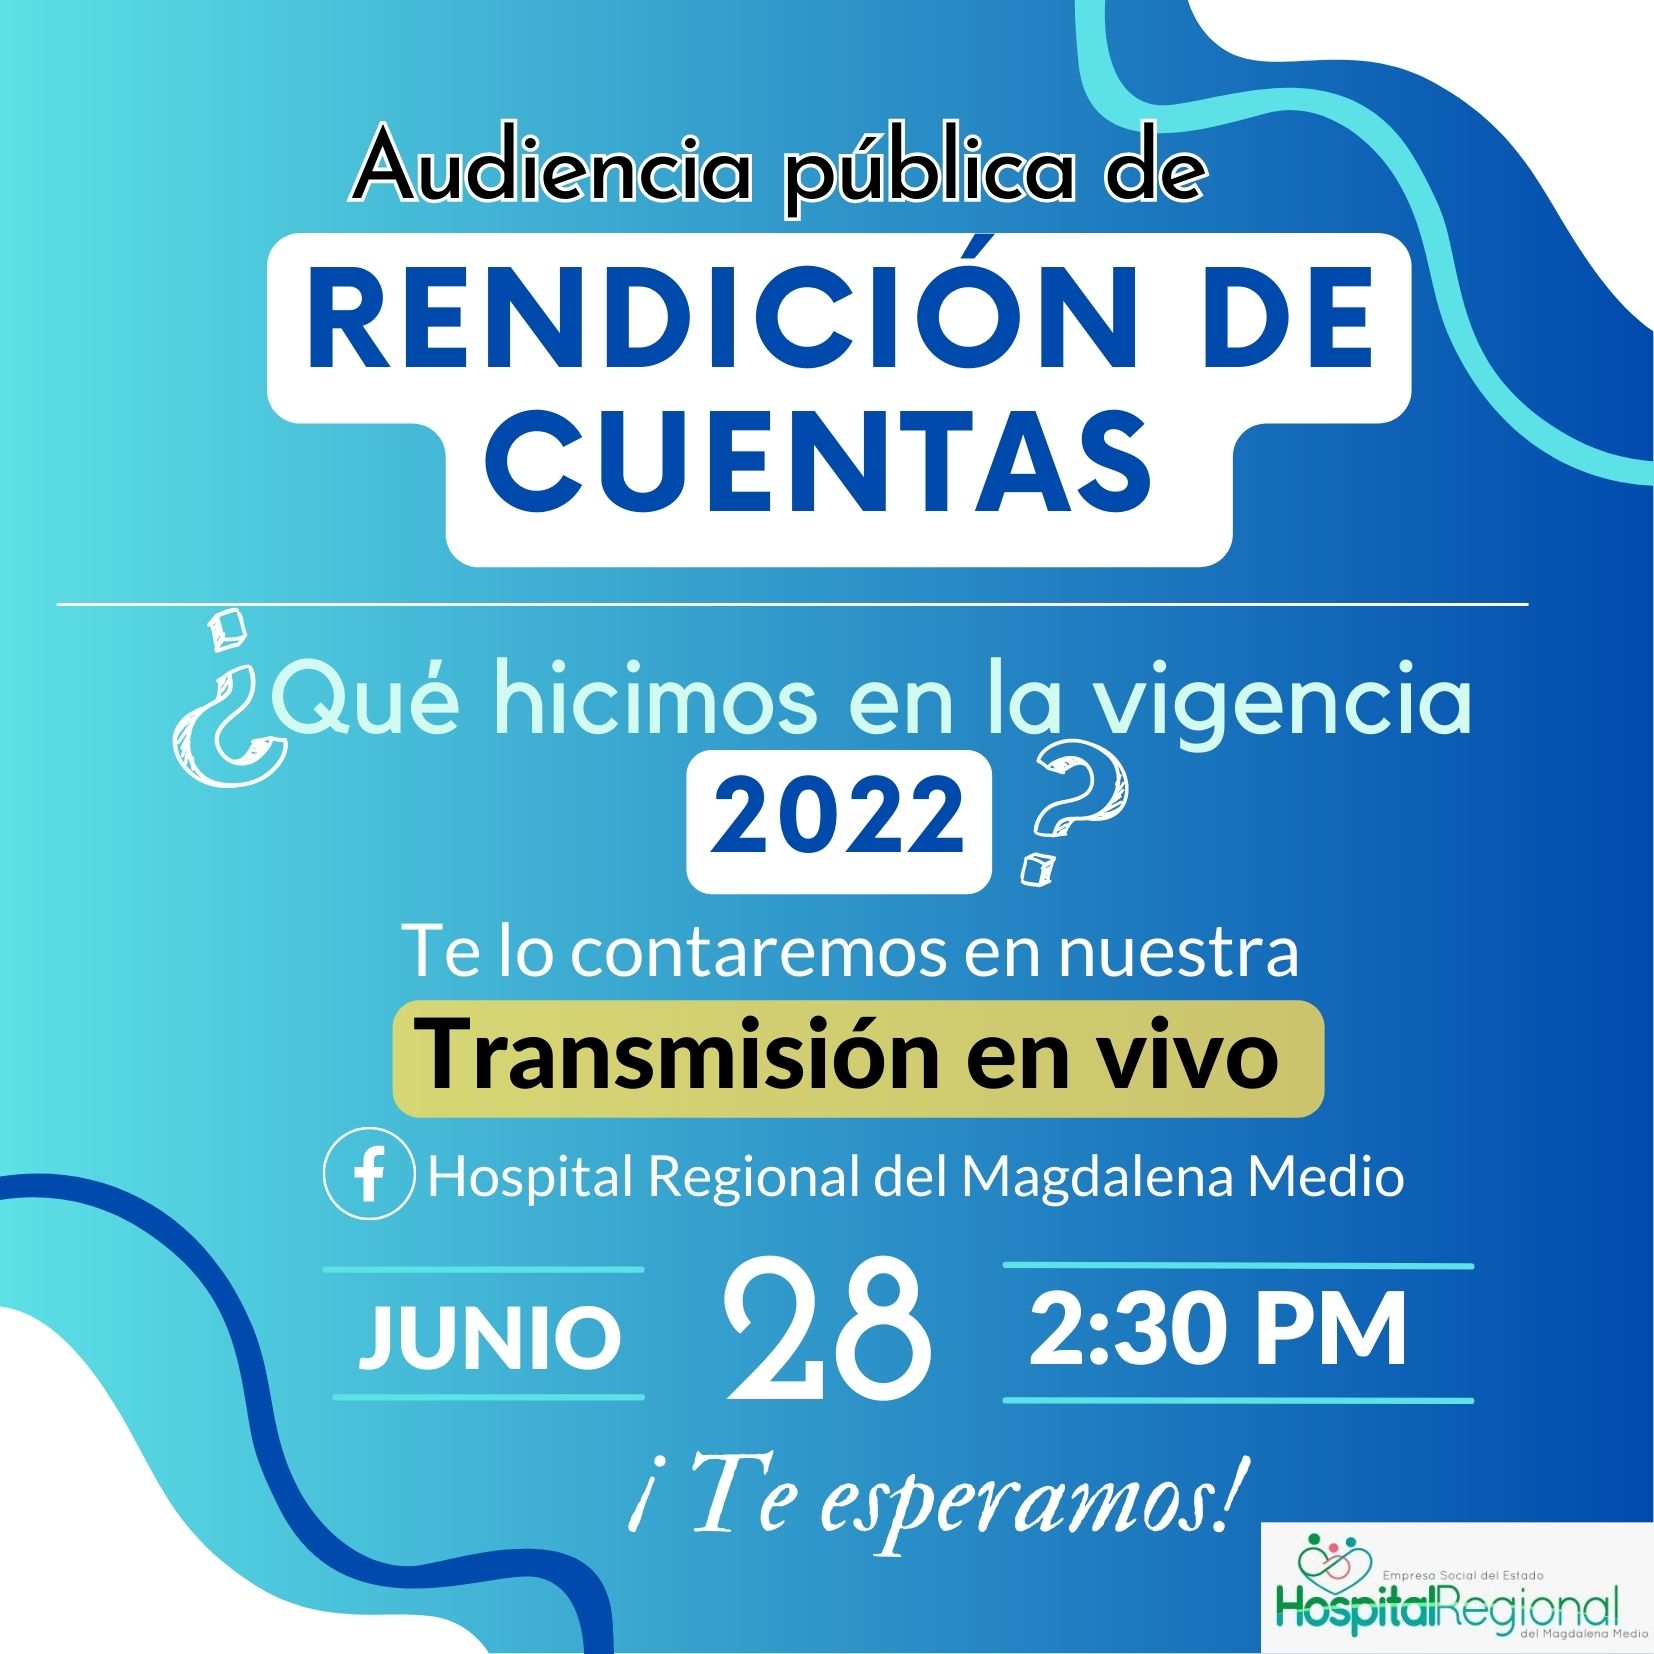 INVITACION RENDICUENTAS 2022